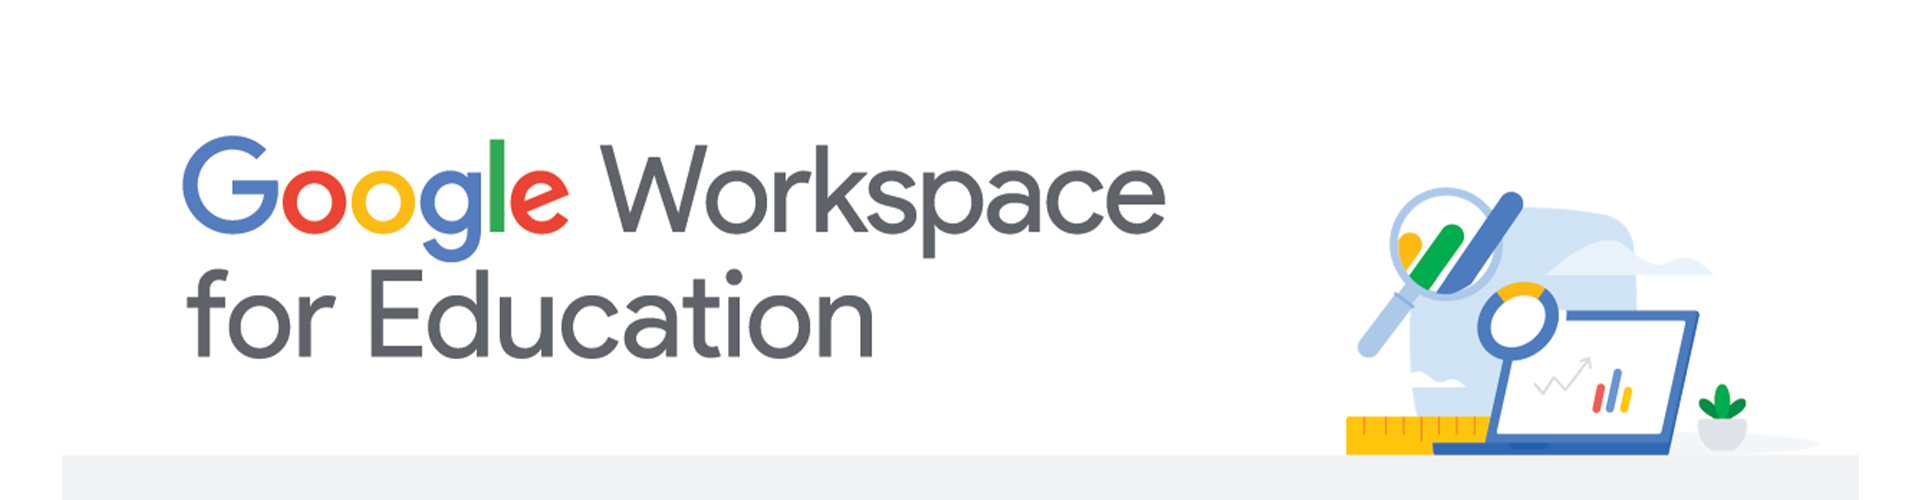 Cộng tác và bảo mật trong Google Workspace cho Giáo dục